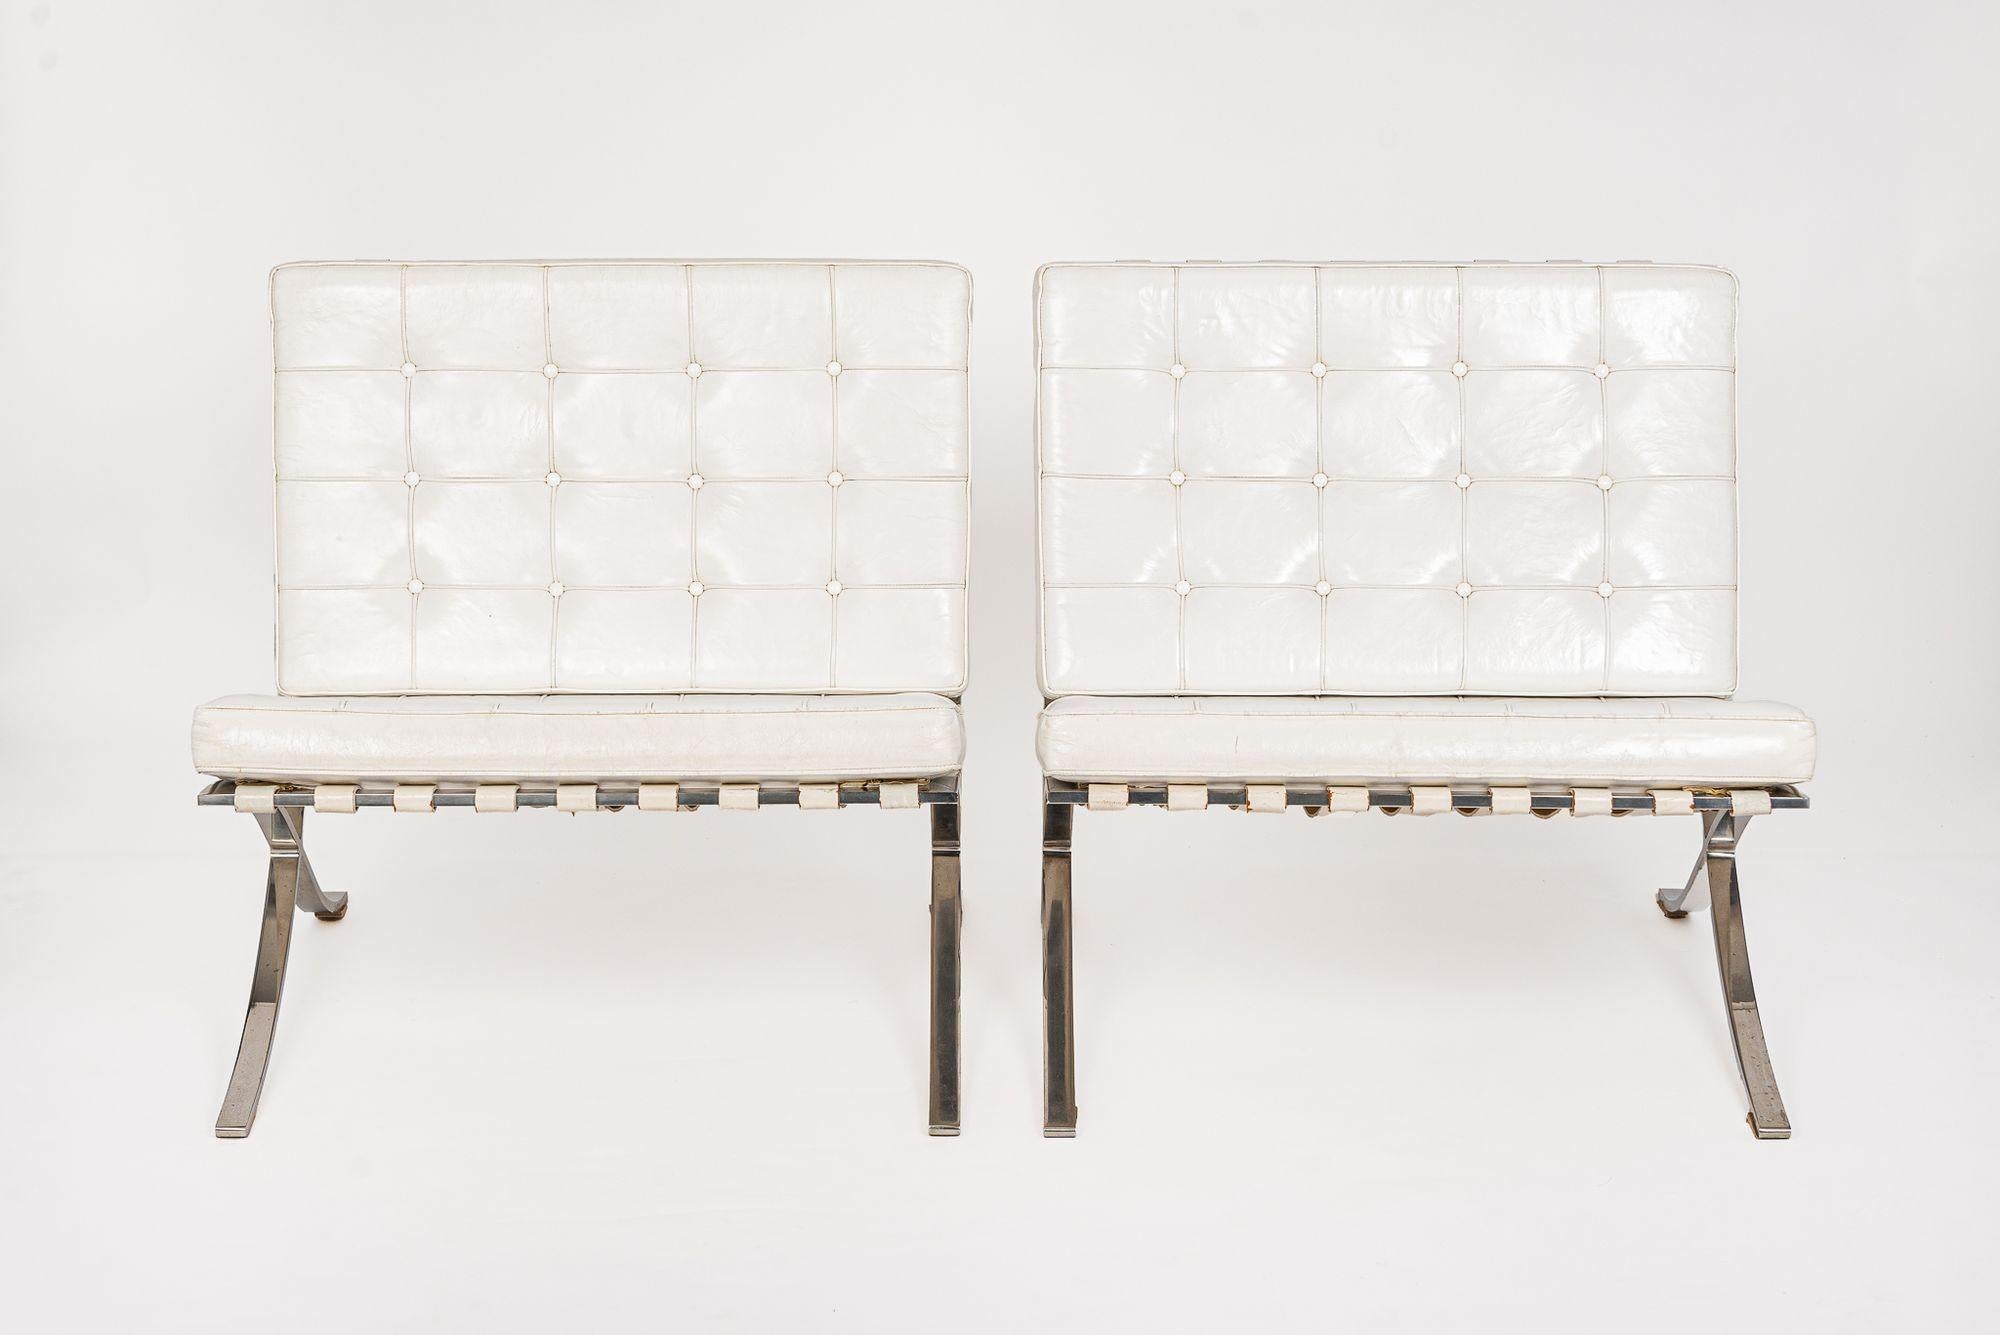 Dieses Paar weißer Barcelona-Stühle aus der Mitte des Jahrhunderts, entworfen von Mies van der Rohe, wurde von Knoll International, Inc. um 1970 hergestellt. Dieser ikonische Bauhaus-Stuhl, der ursprünglich von Ludwig Mies van der Rohe 1929 für den